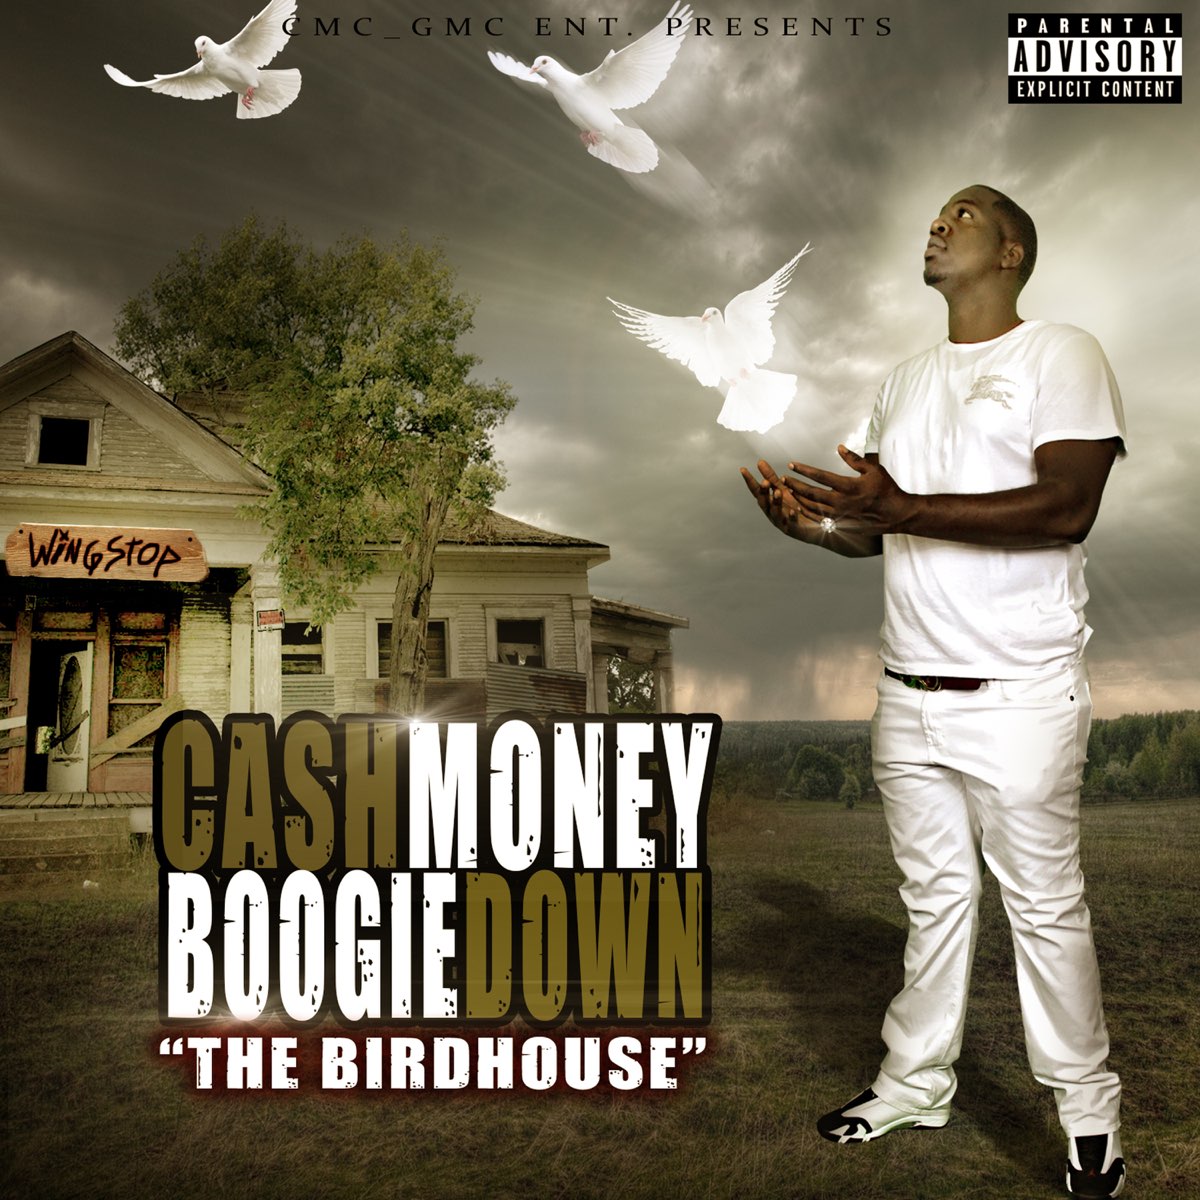 Cash Click Boog - The Birdhouse